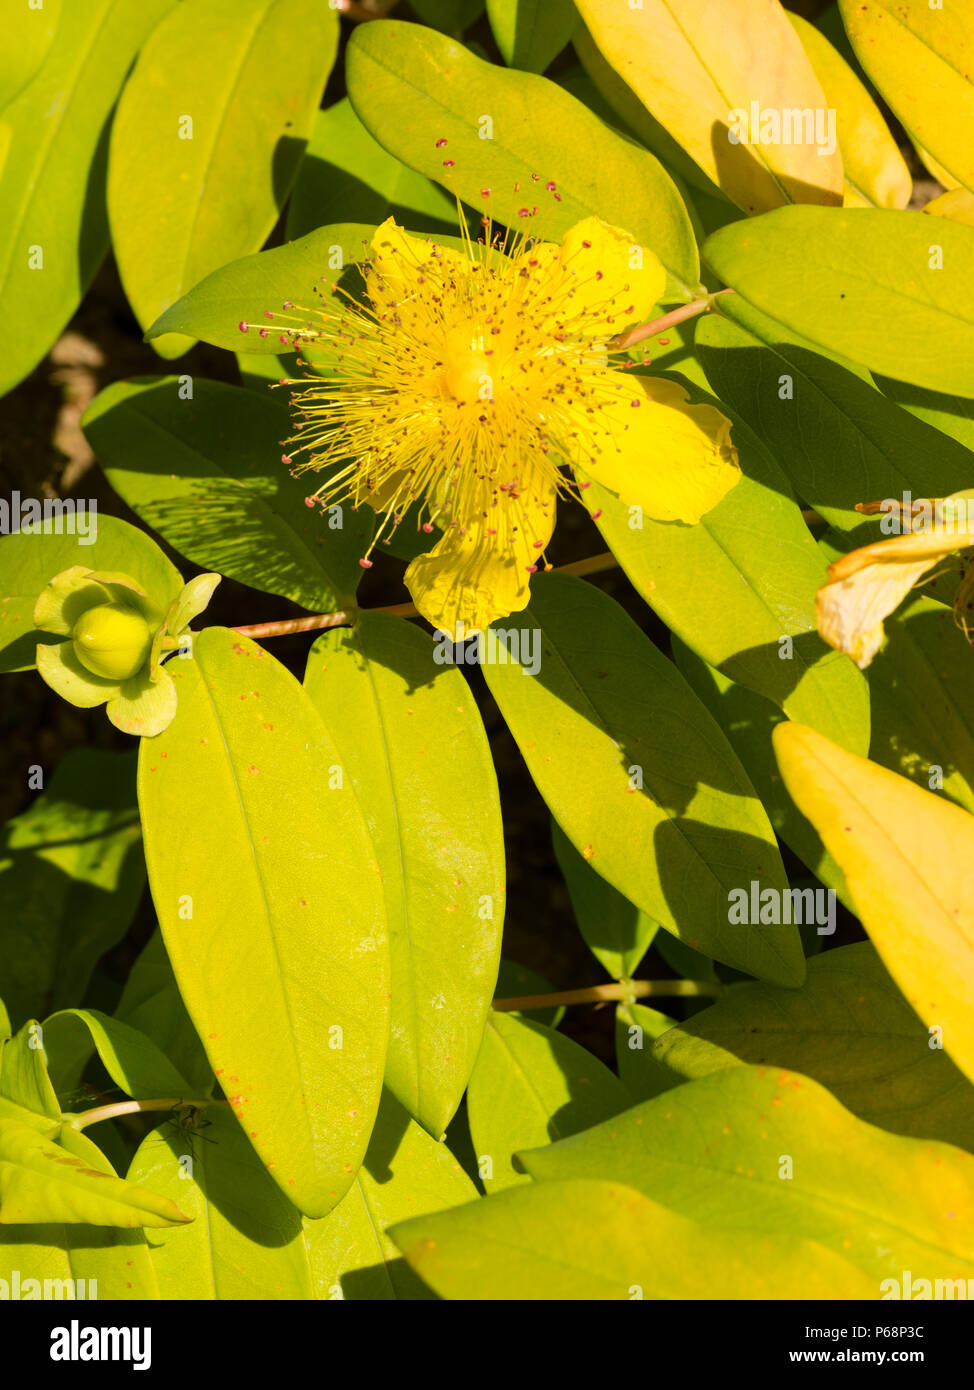 Goldgelbe Laub und powderpuff gelbe Blume der Bodenbelag Evergreen stieg von Sharon, Hypericum calycinum "Brigadoon" Stockfoto